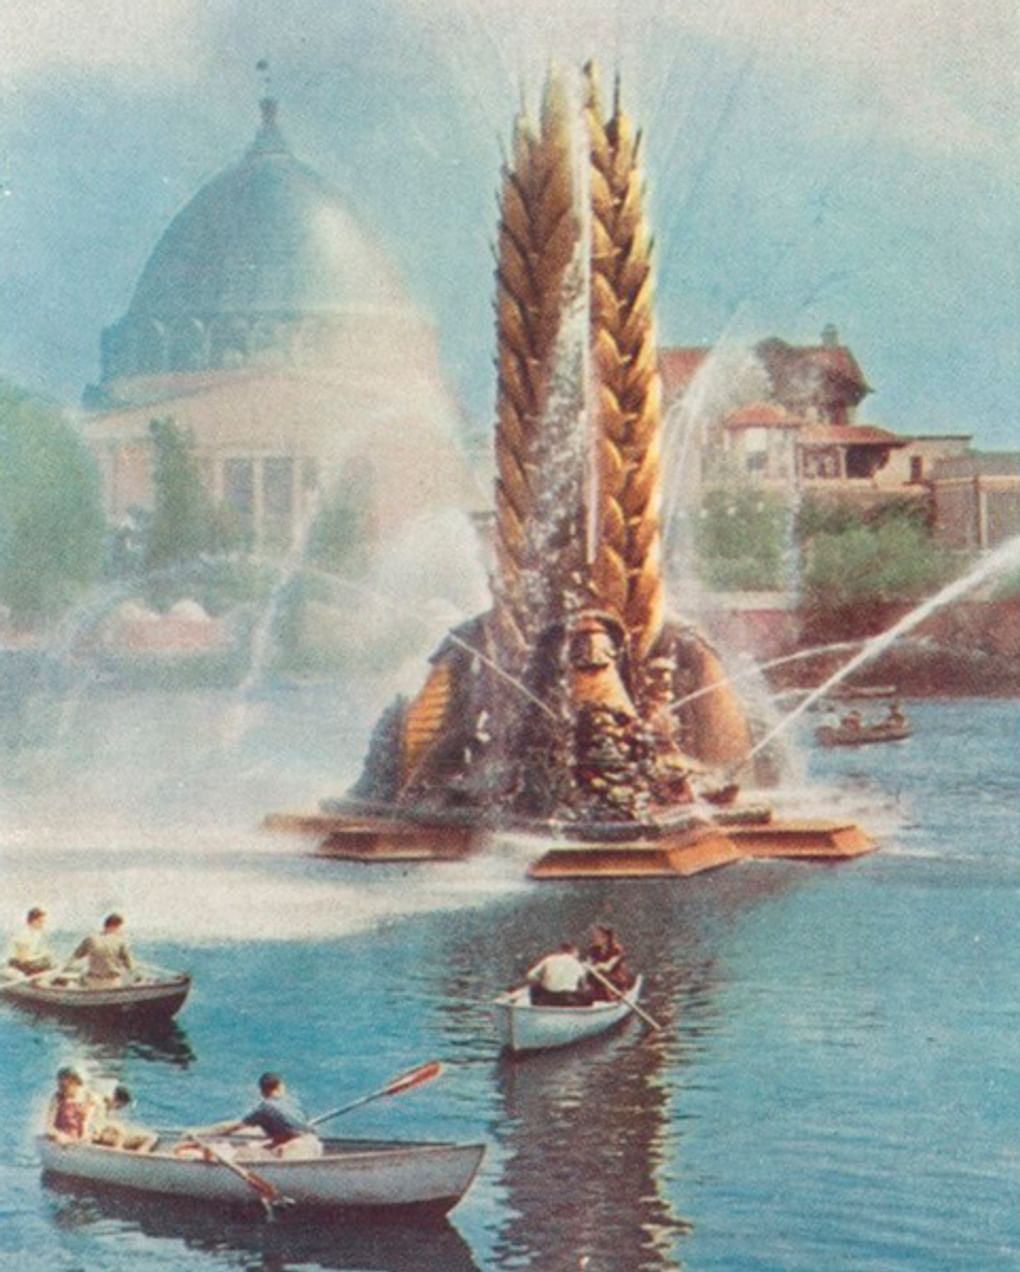 Фонтан «Золотой колос», Москва. 1961 год. Фотография: Государственный музей истории Санкт-Петербурга, Санкт-Петербург